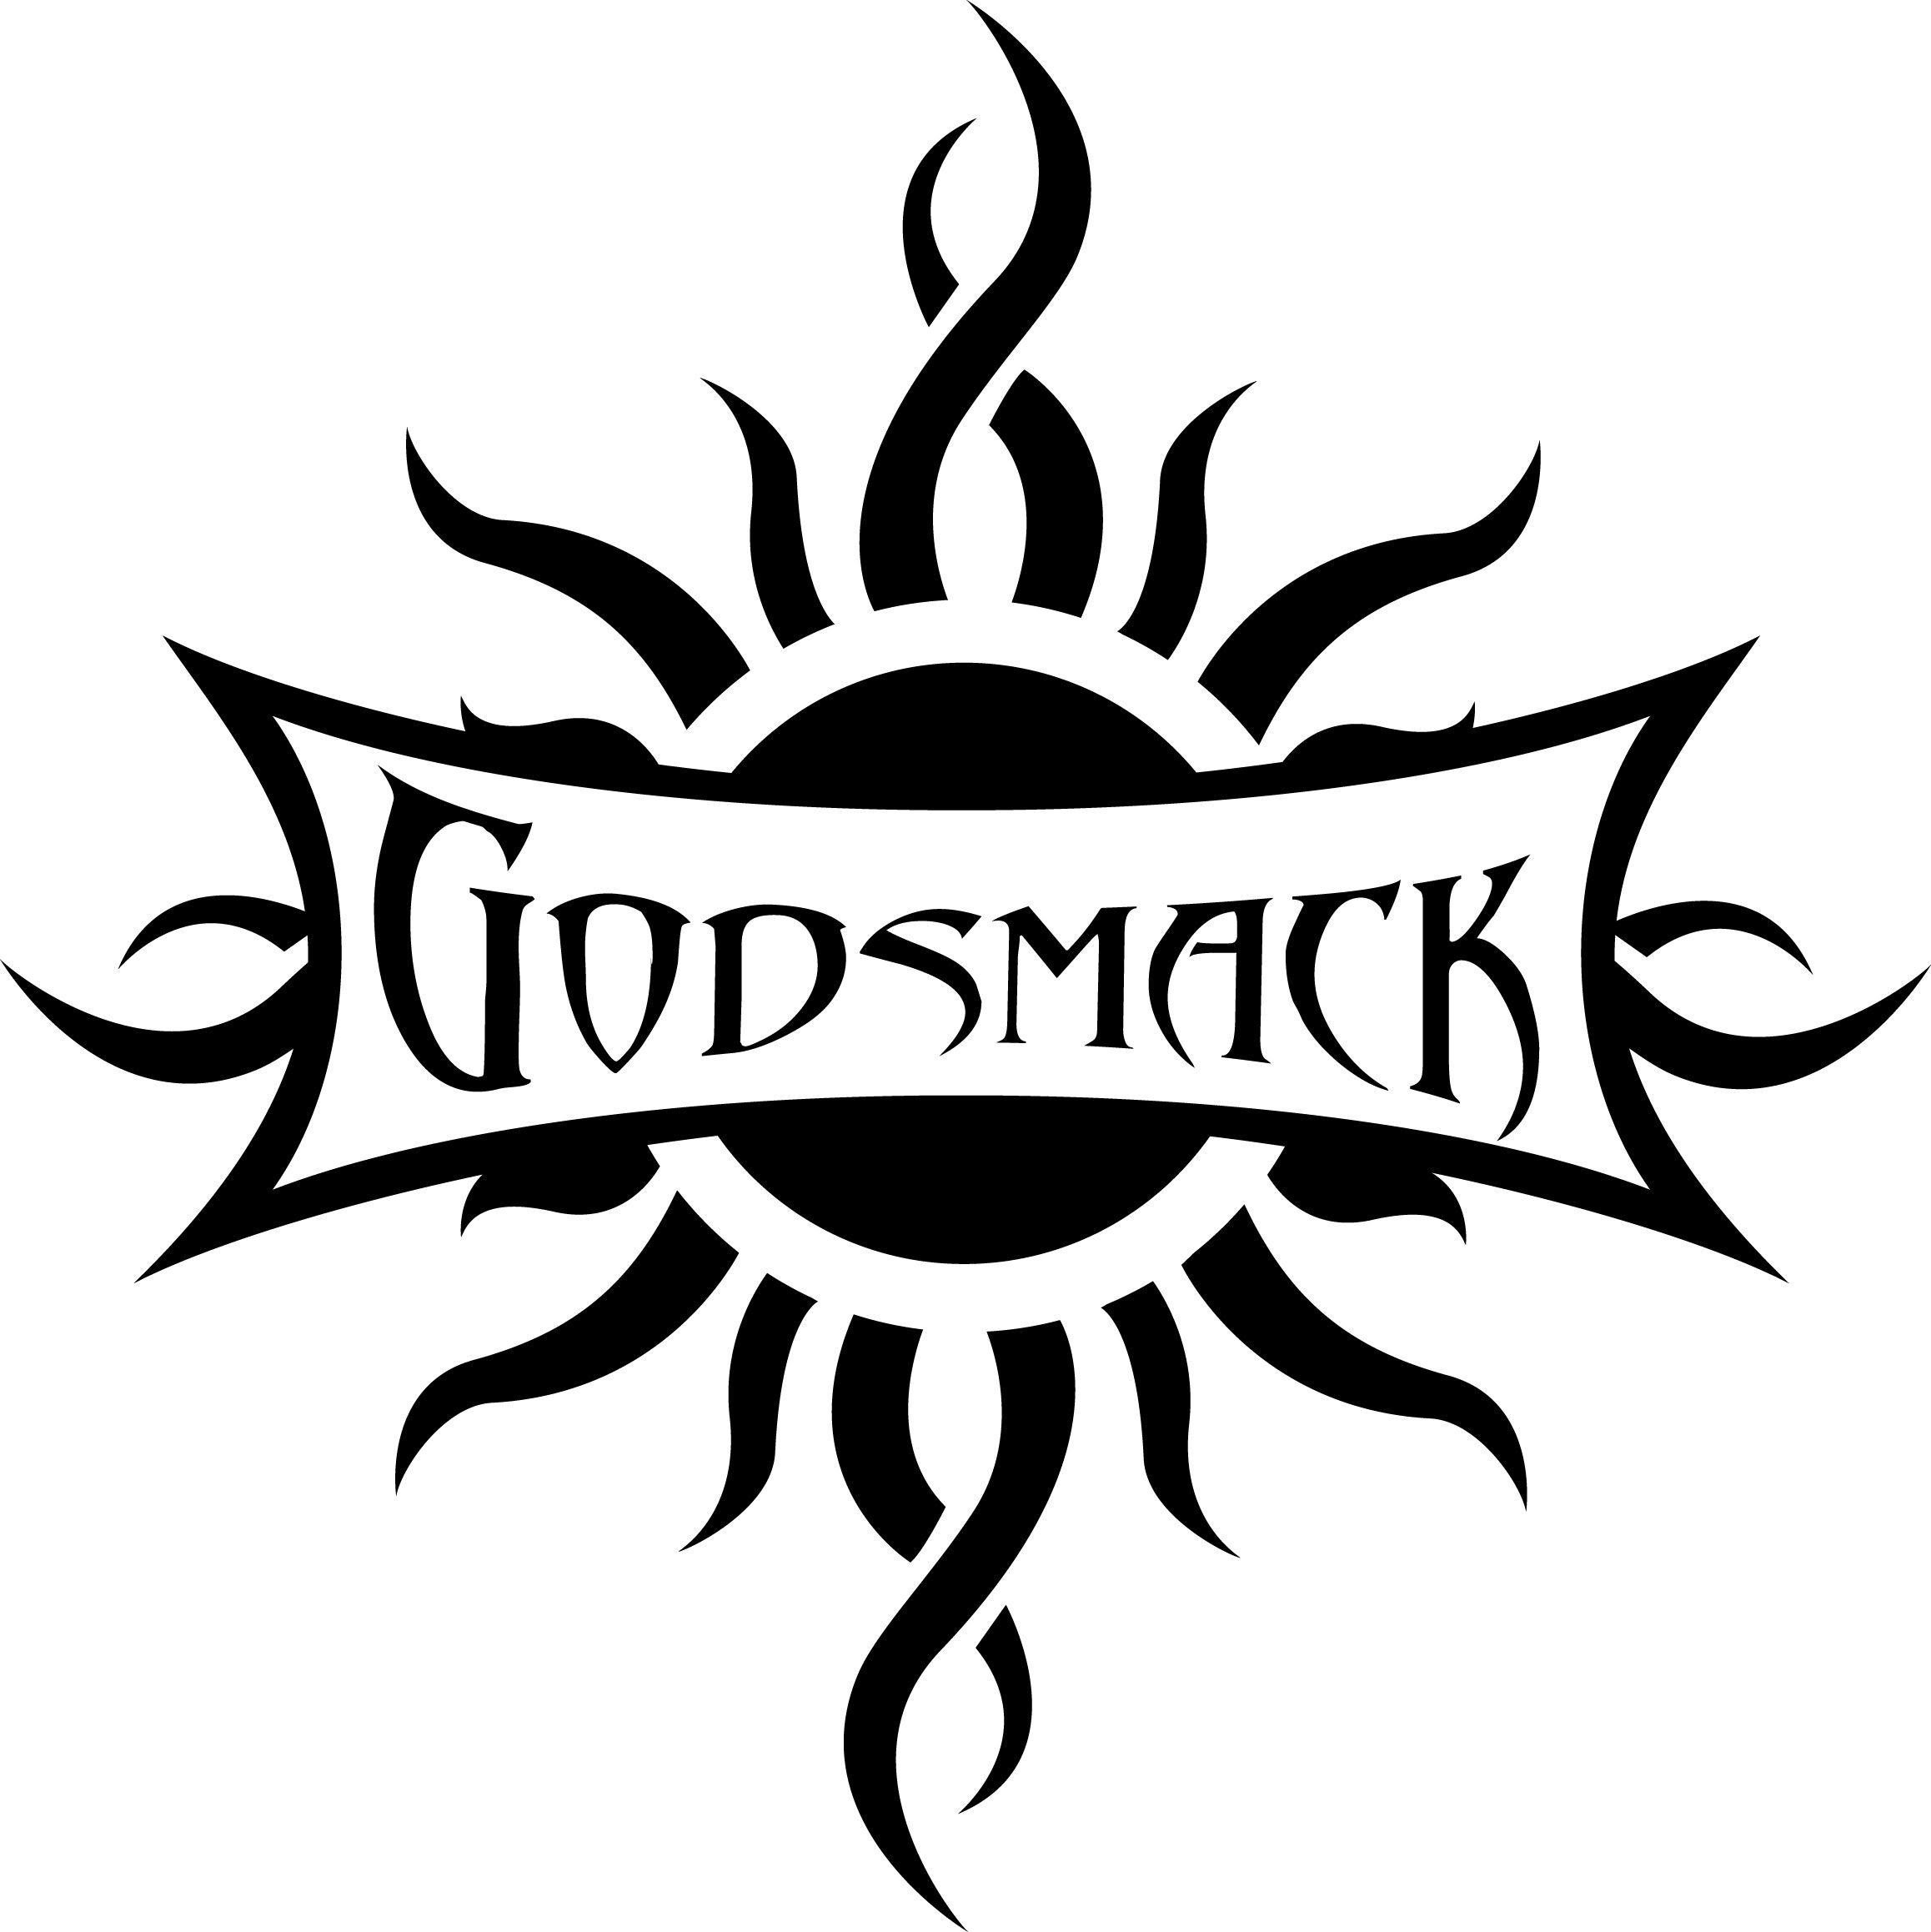 Godsmack Sun Logo - Godsmack sun Logos